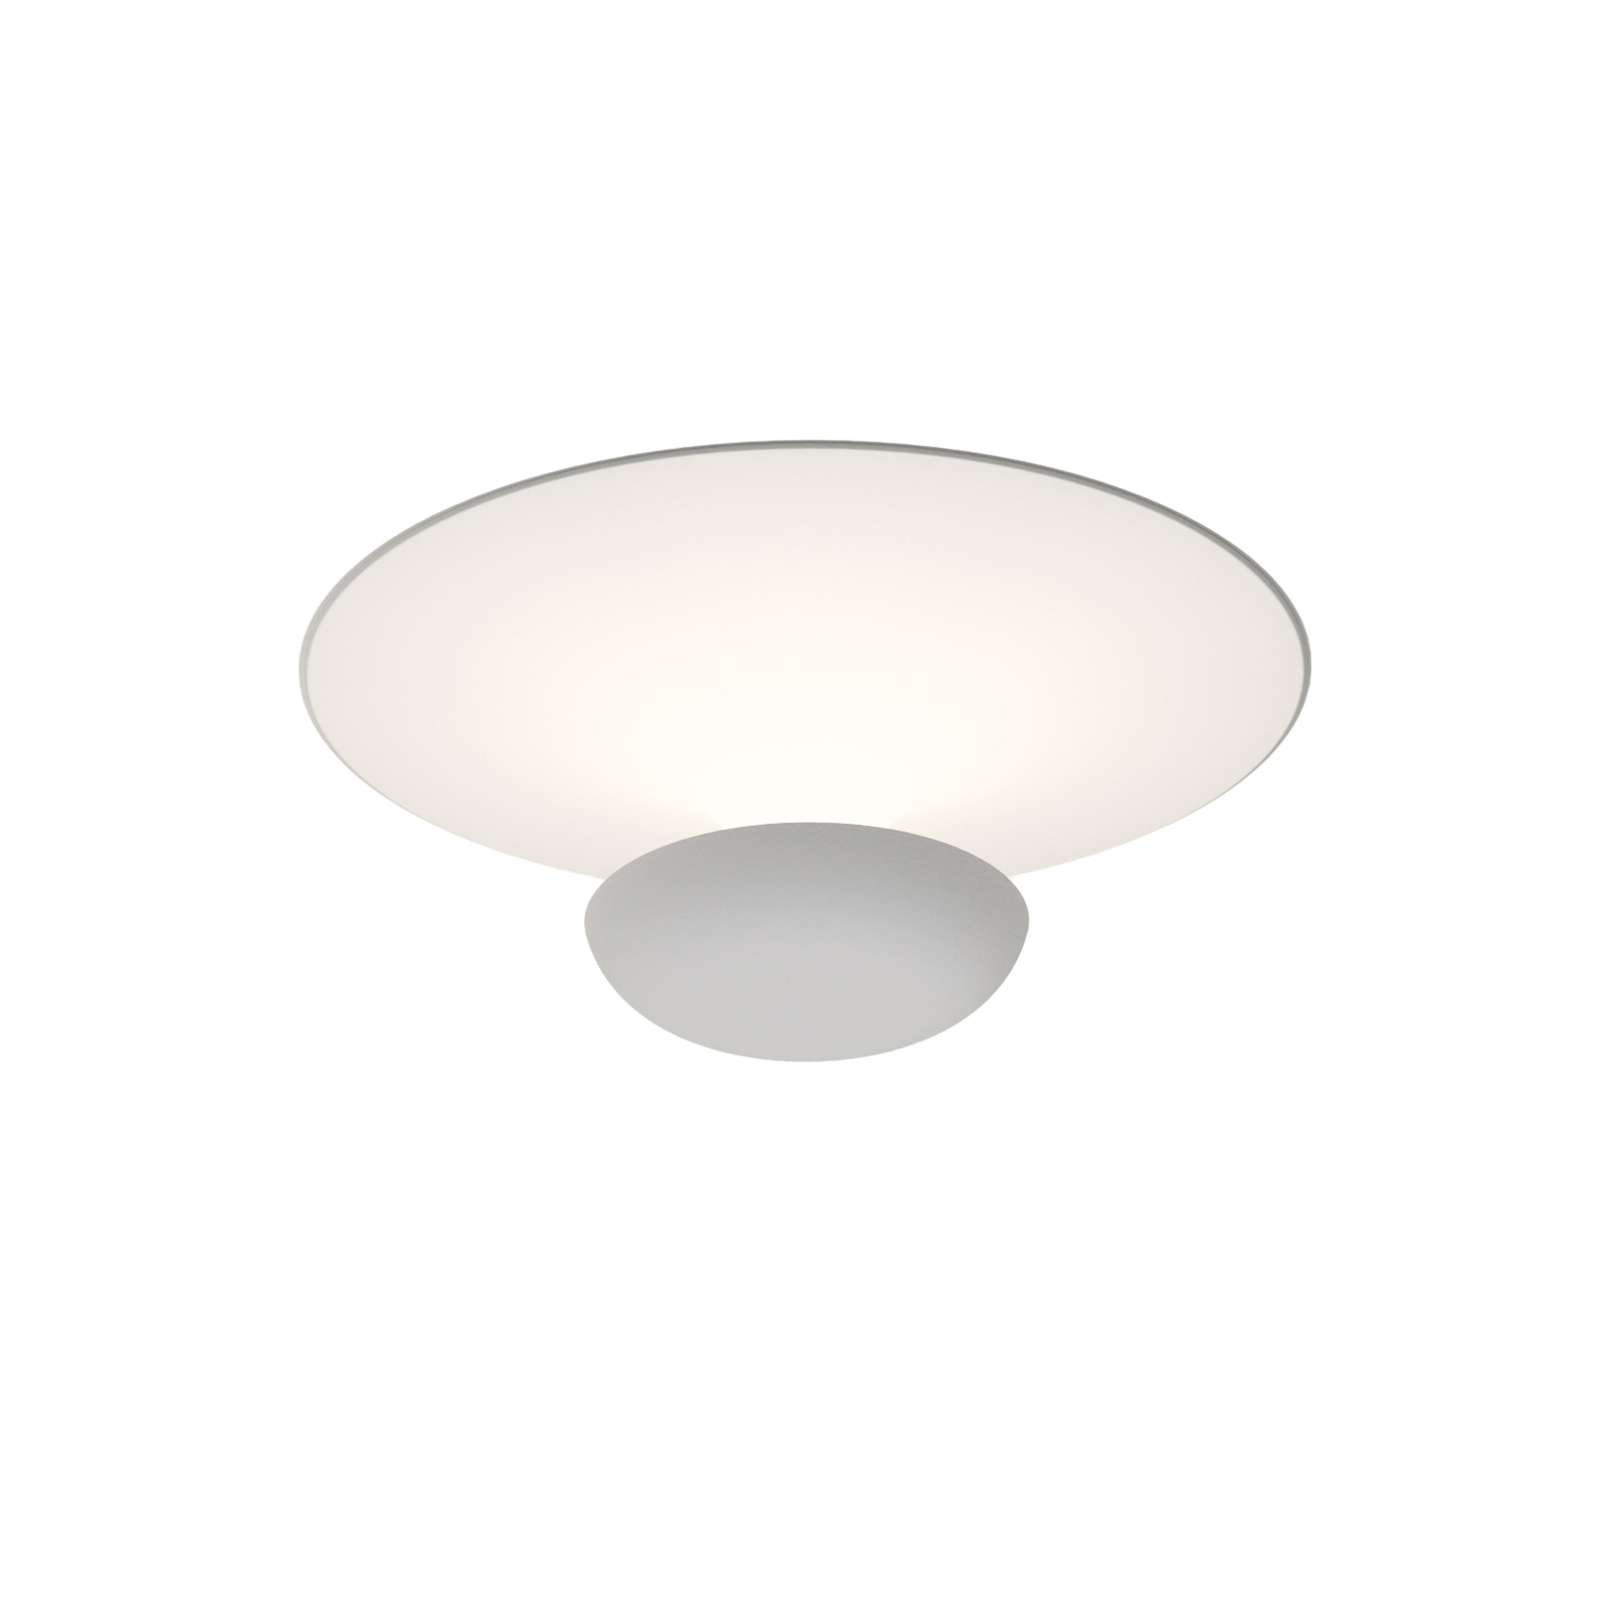 Vibia Funnel LED ceiling light white Ø 16cm 2,700K